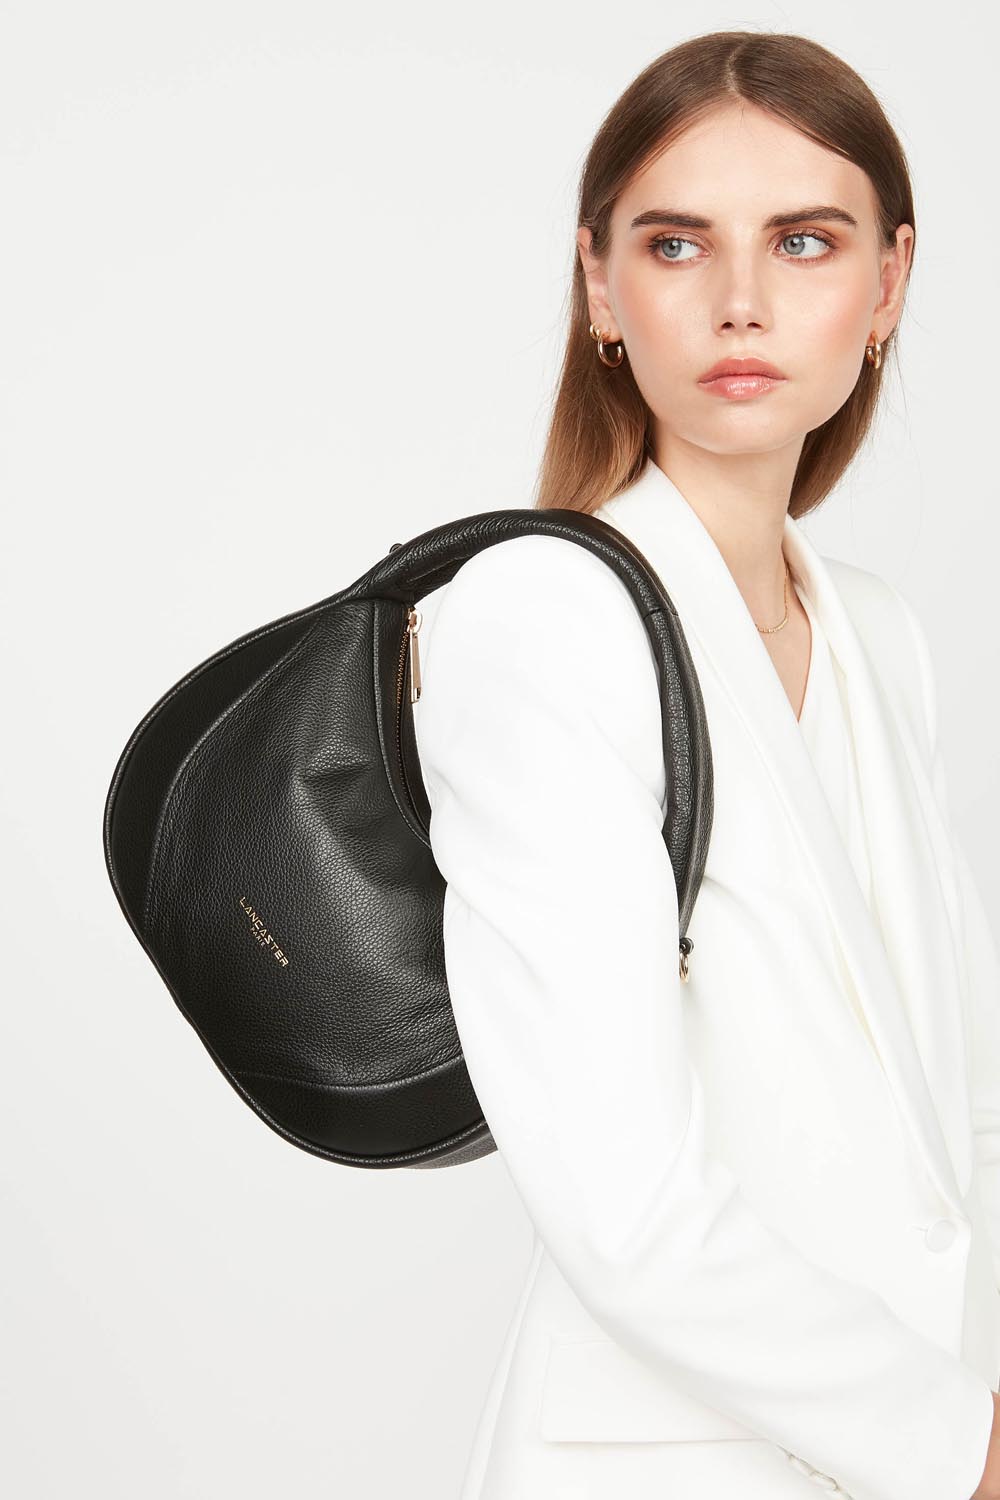 handbag - foulonné cerceau #couleur_noir